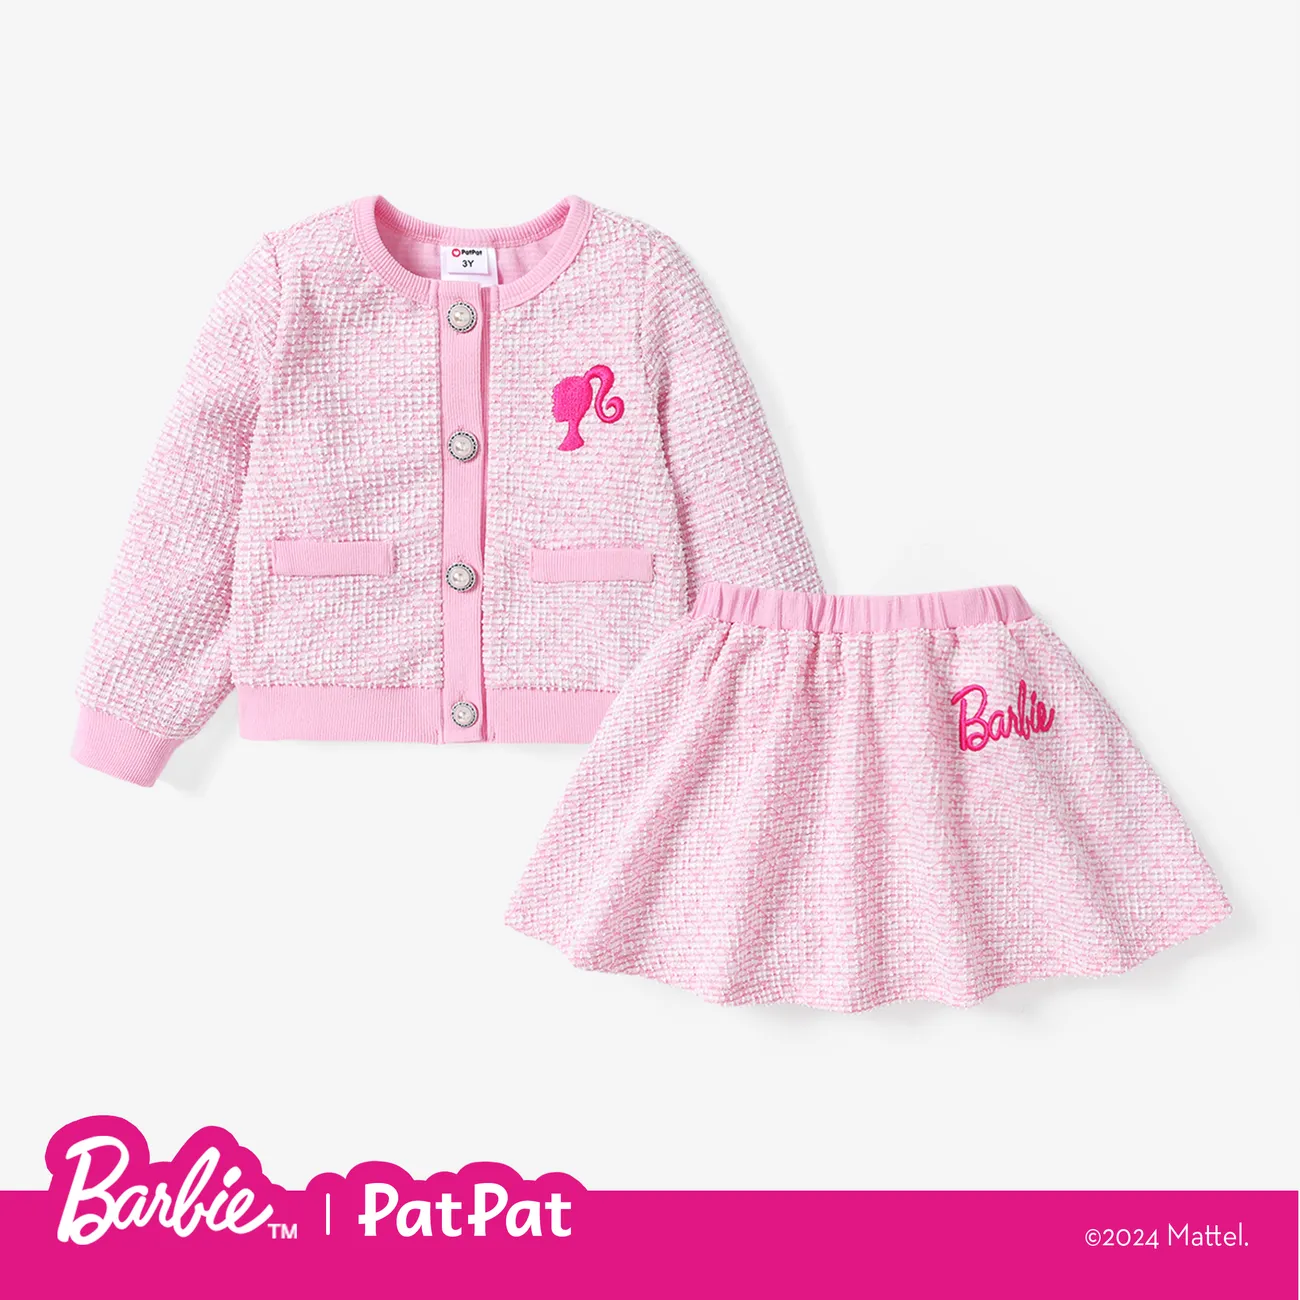 Barbie IP Menina Botão Bonito Fato saia e casaco Rosa big image 1